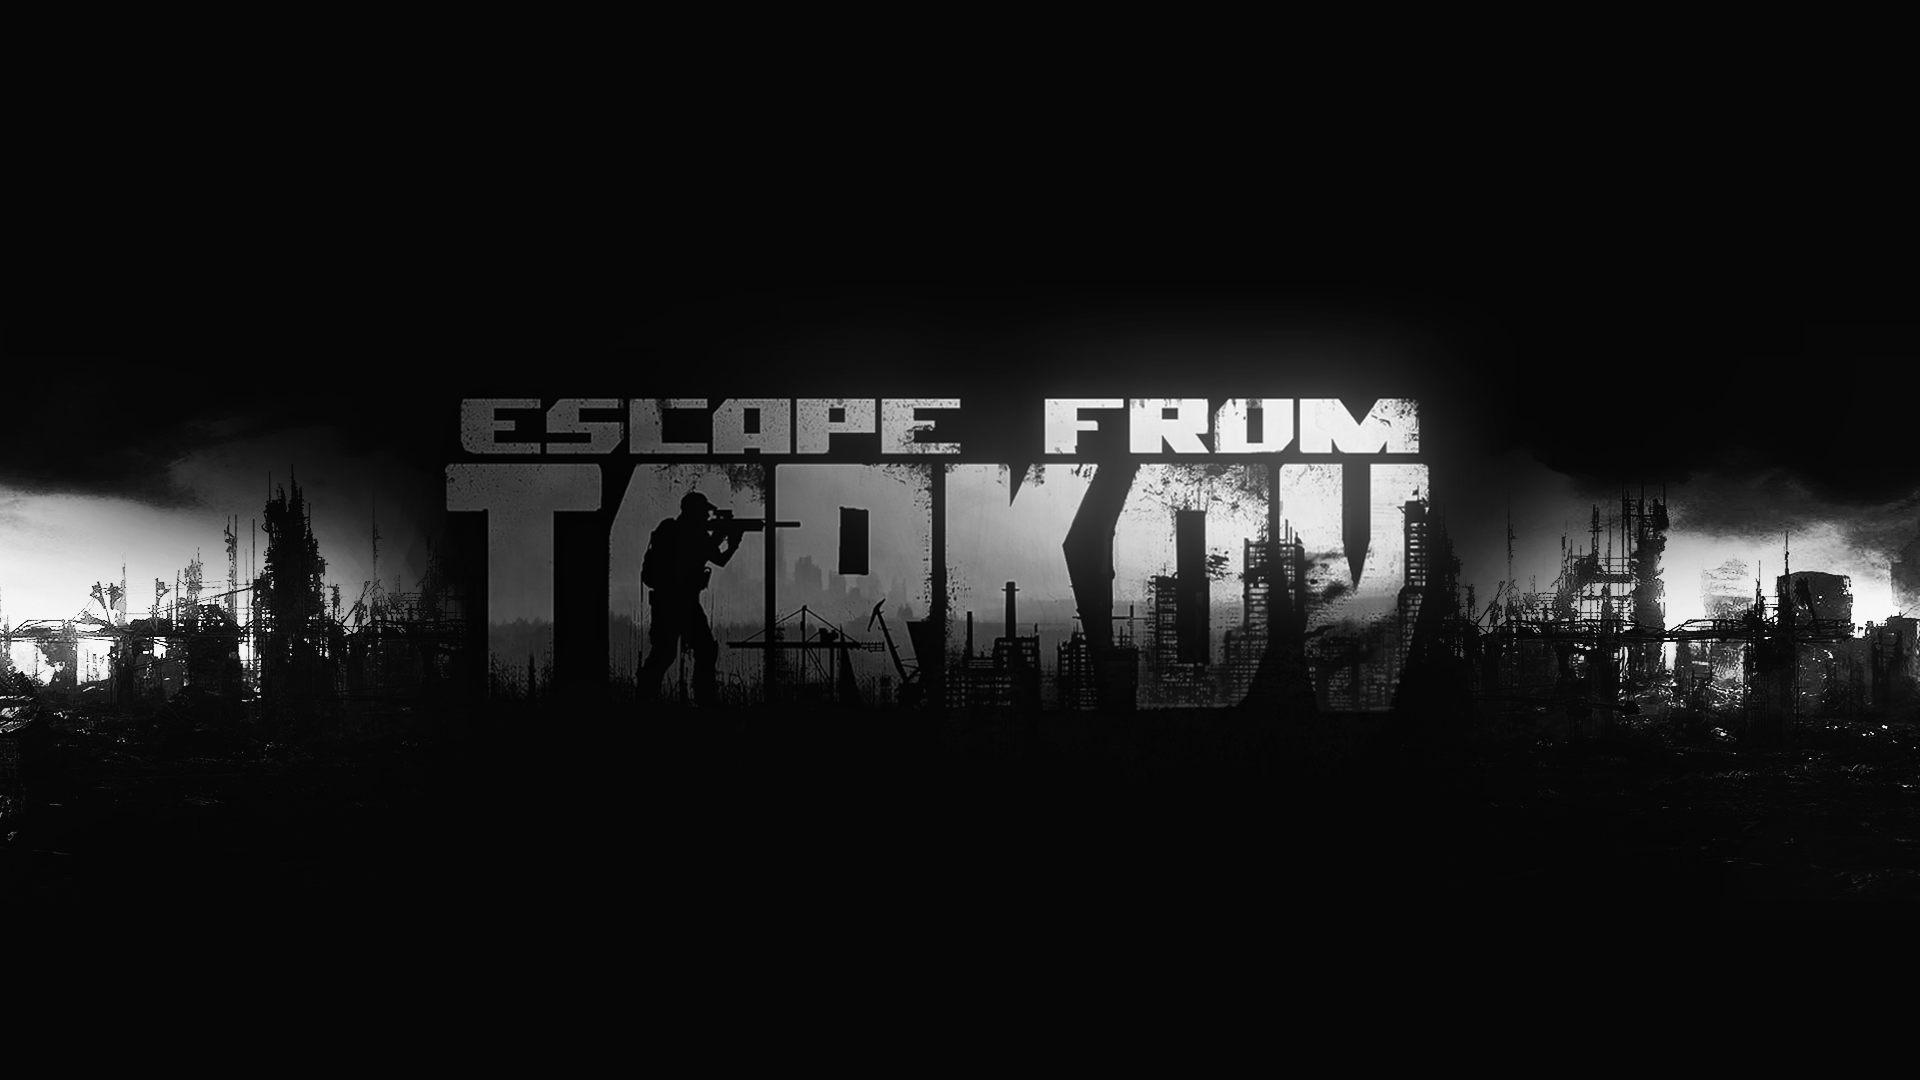 s.t.a.l.k.e.r. 2 vs escape from tarkov